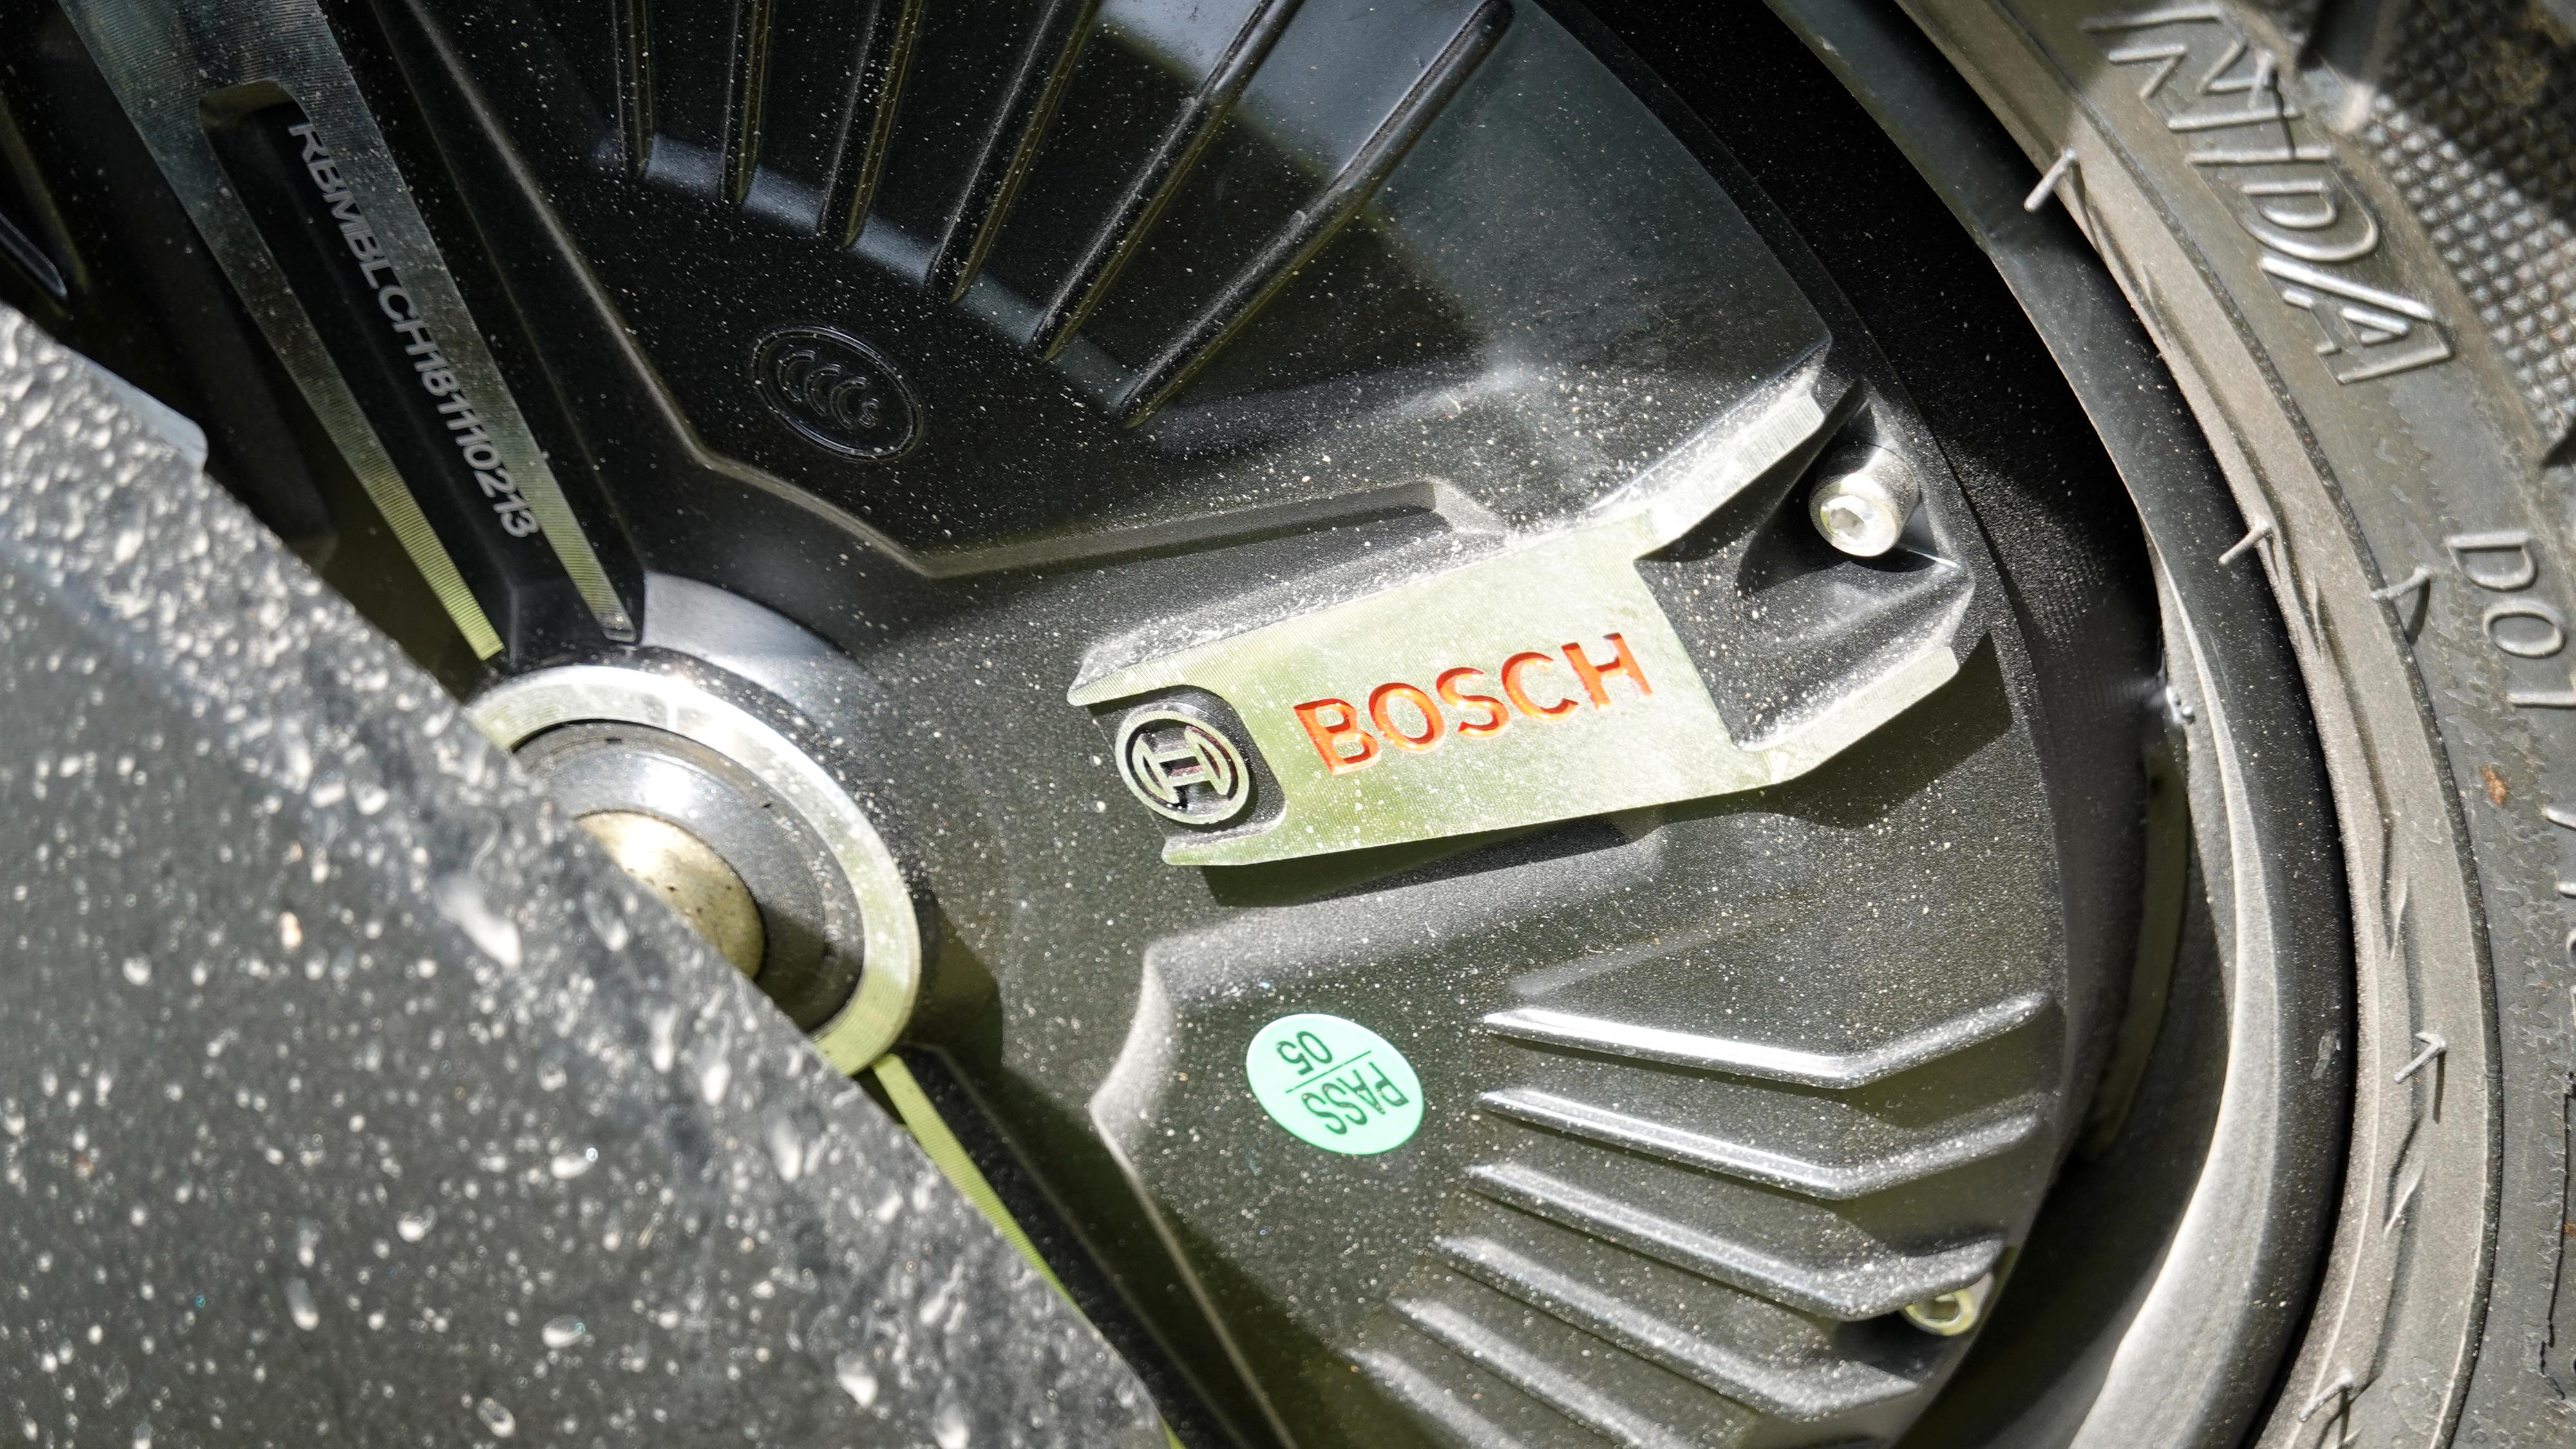 Vessla fremhever selv «kvalitetsdeler», blant annet motor fra Bosch og batteri fra LG.